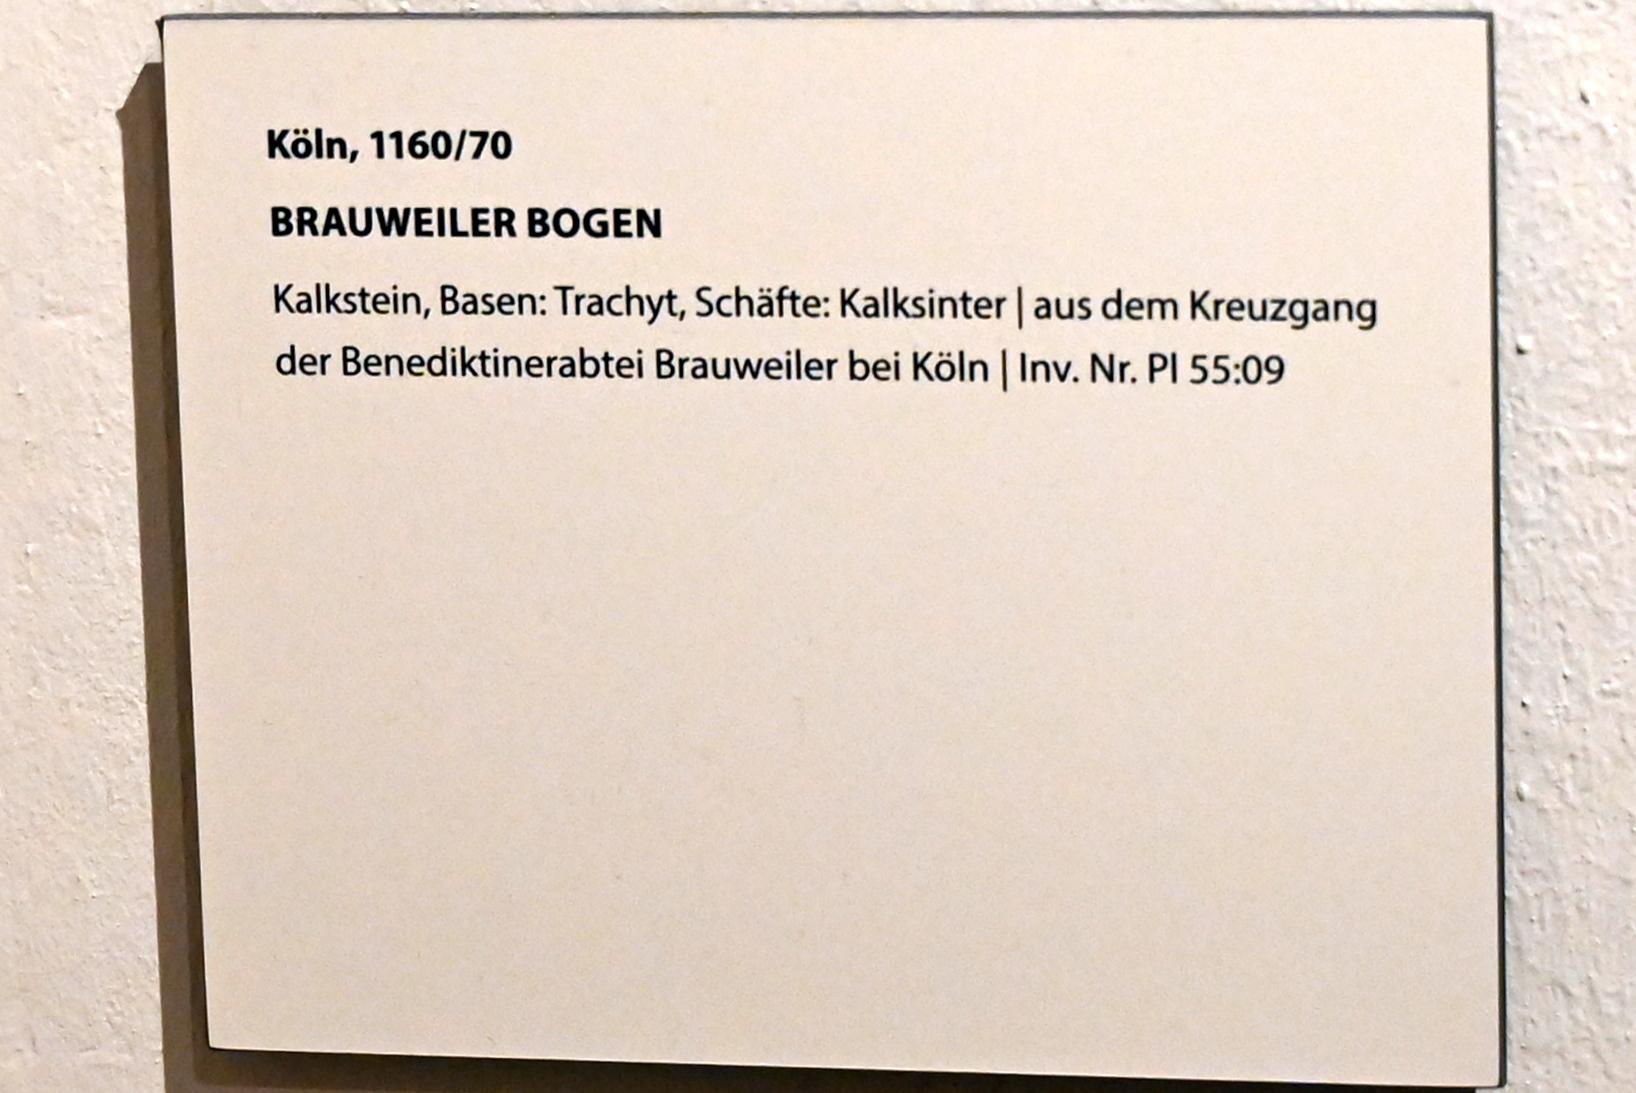 Brauweiler Bogen, Brauweiler (Pulheim), ehem. Benediktinerkloster, jetzt Darmstadt, Hessisches Landesmuseum, Kunsthandwerk, 1160–1170, Bild 2/2